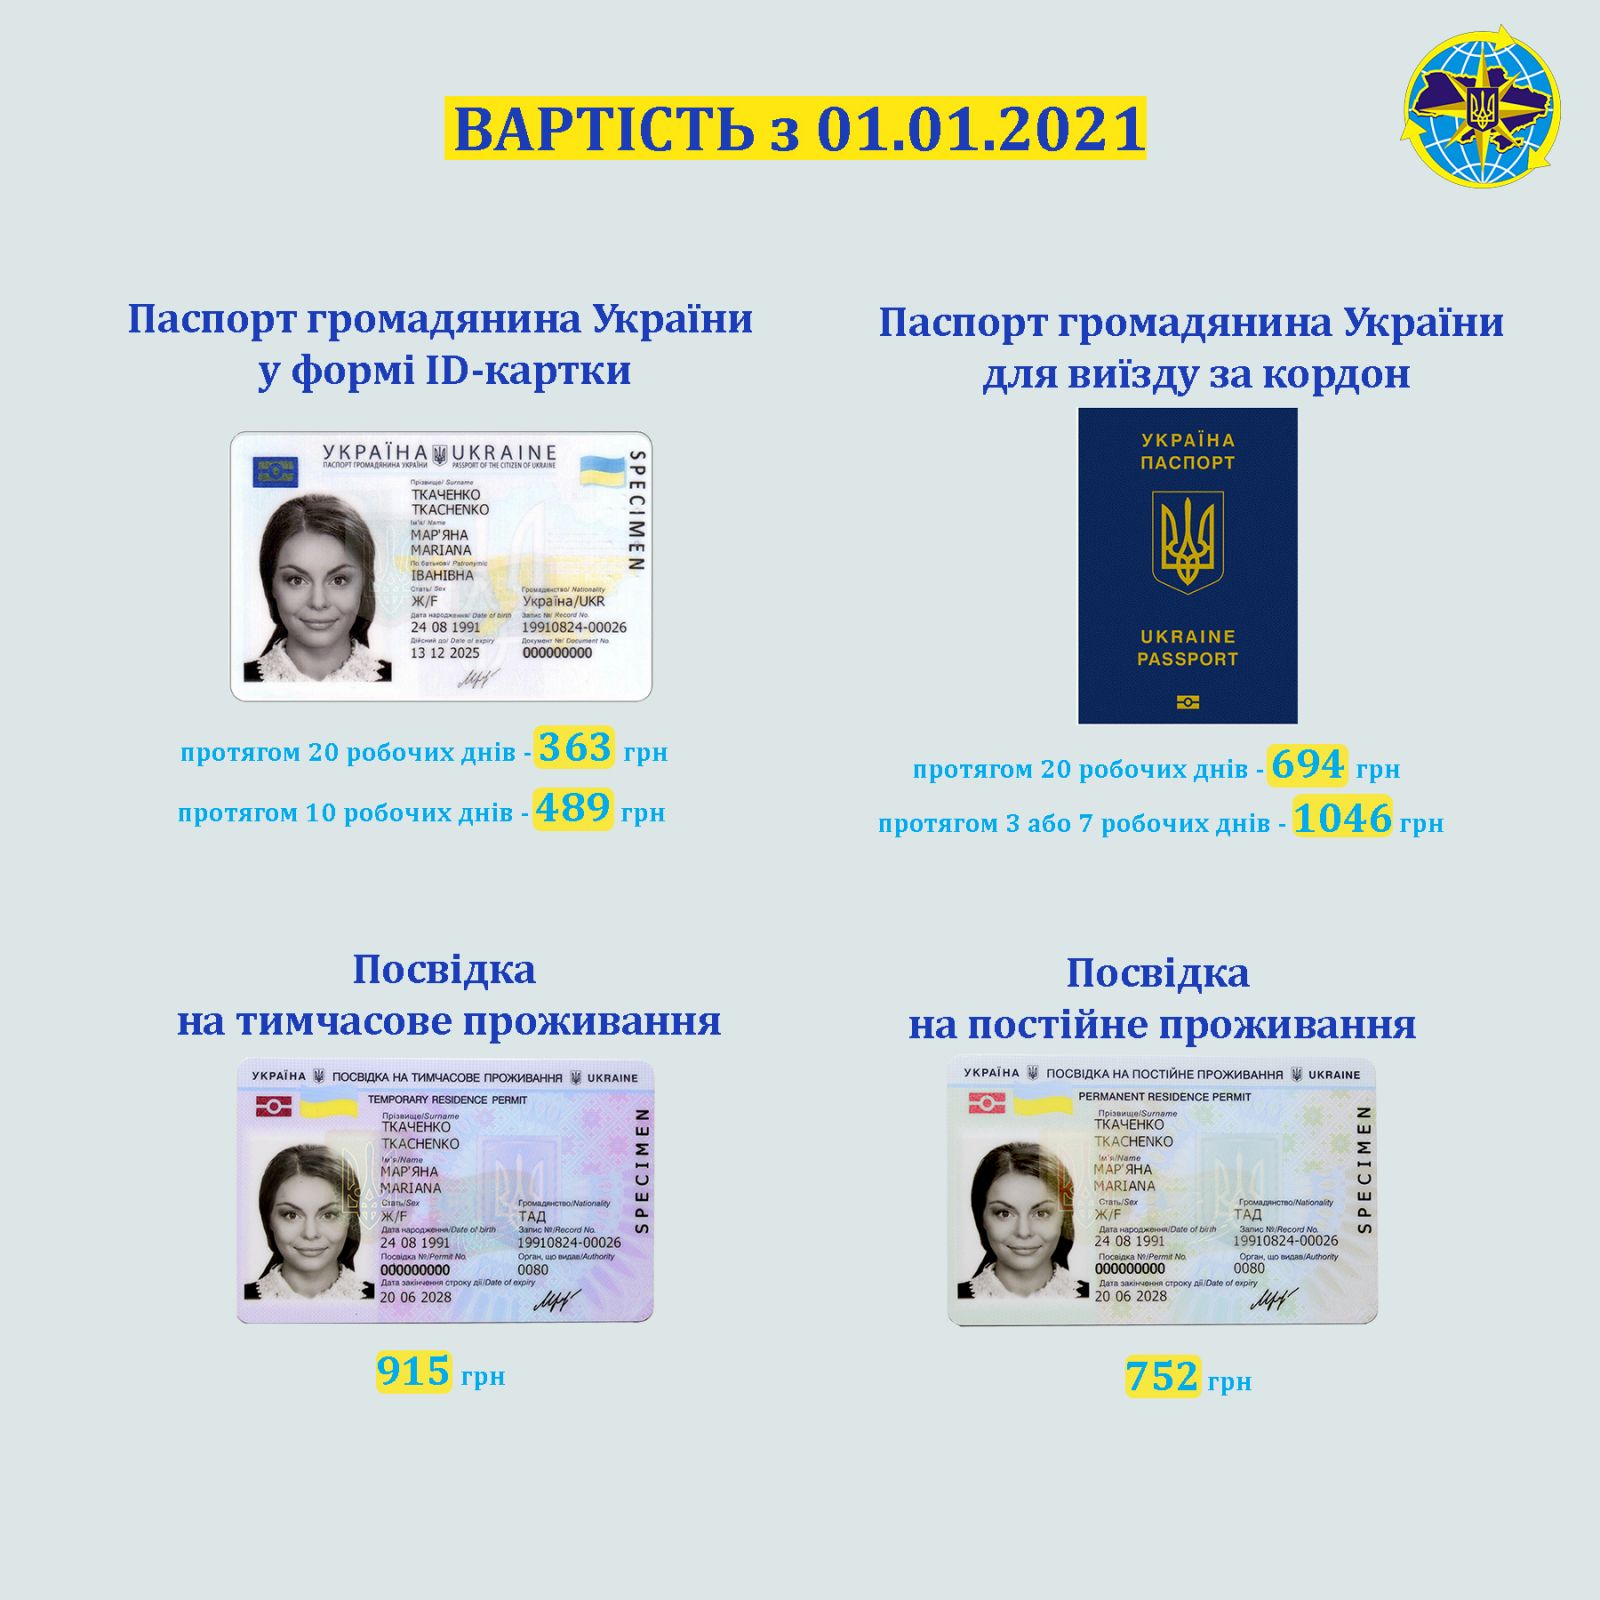 Бланки биометрических документов подорожает. Скриншот фейсбук-сообщения ГМС Украины